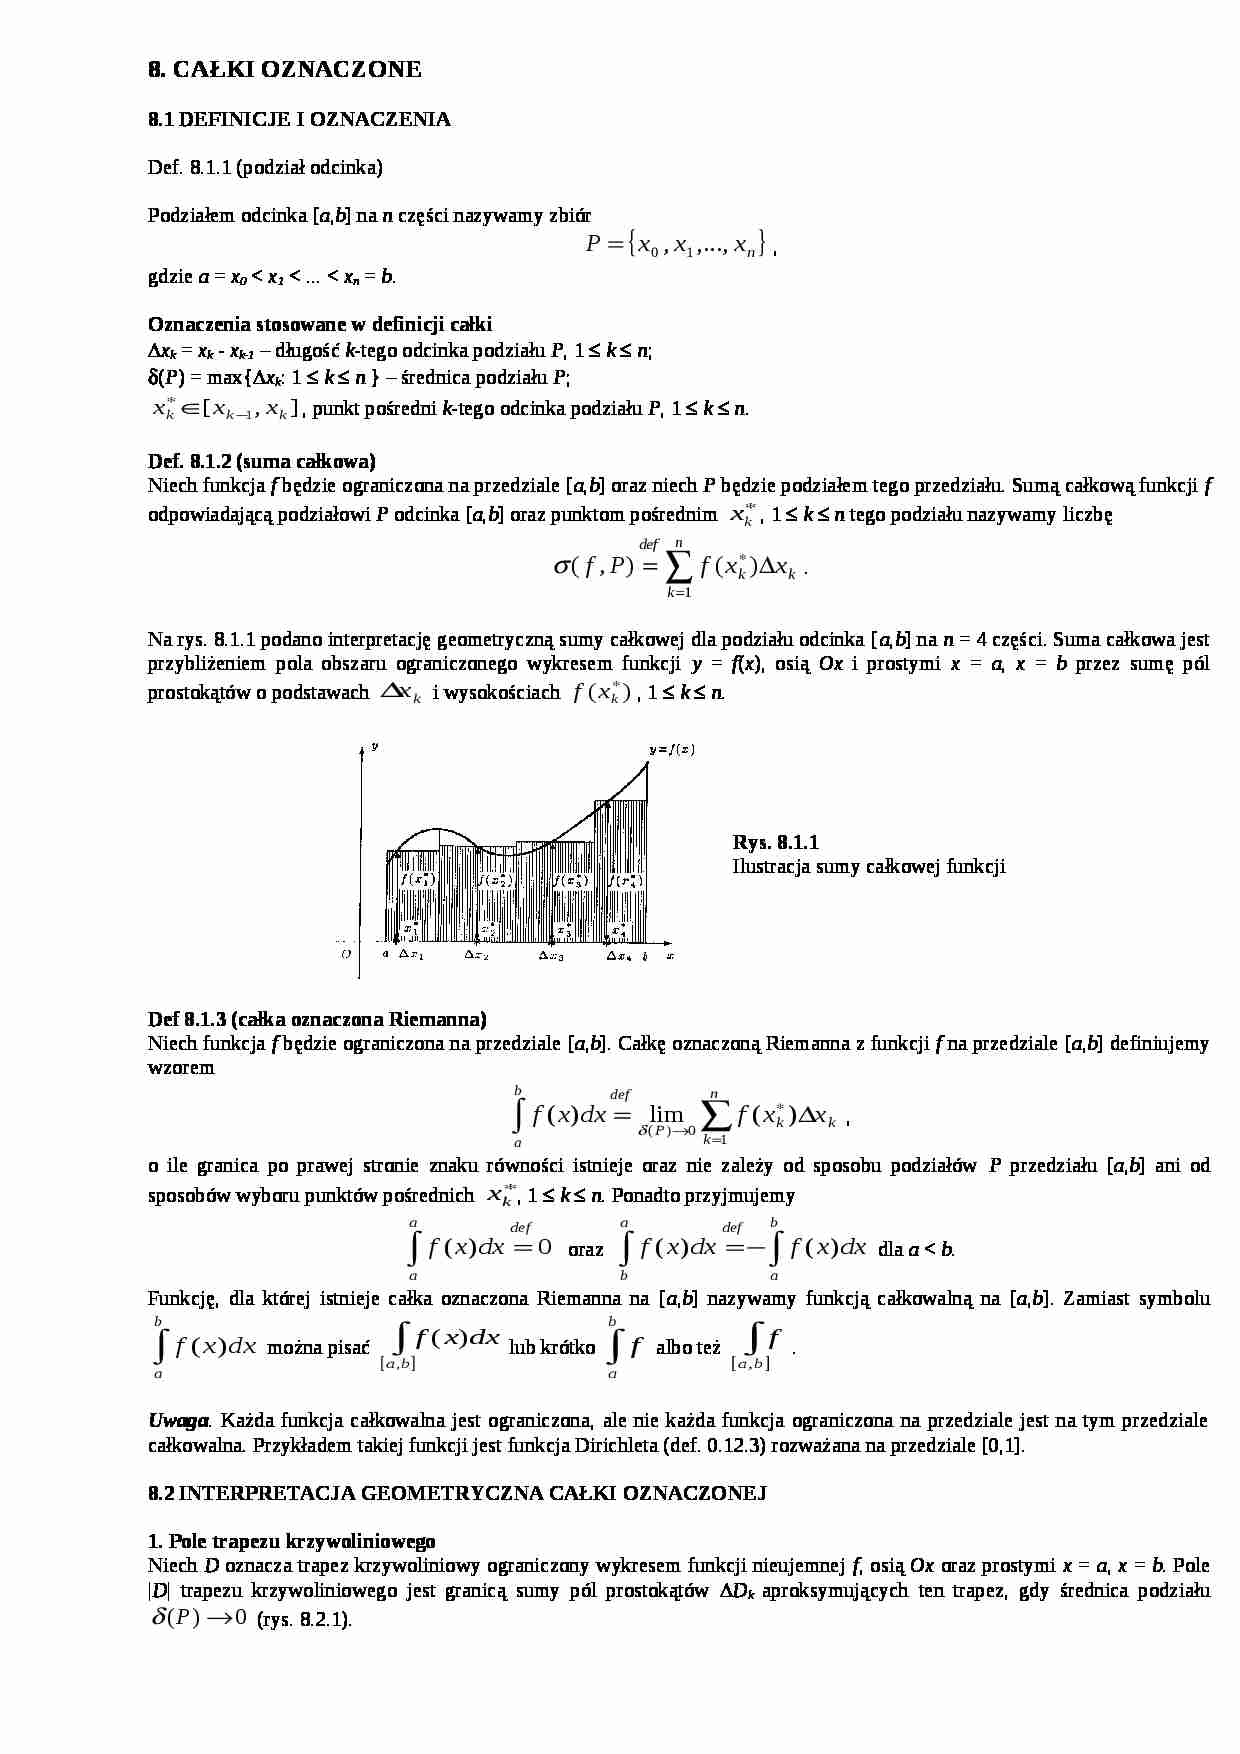 Analiza matematyczna - całki oznaczone - strona 1